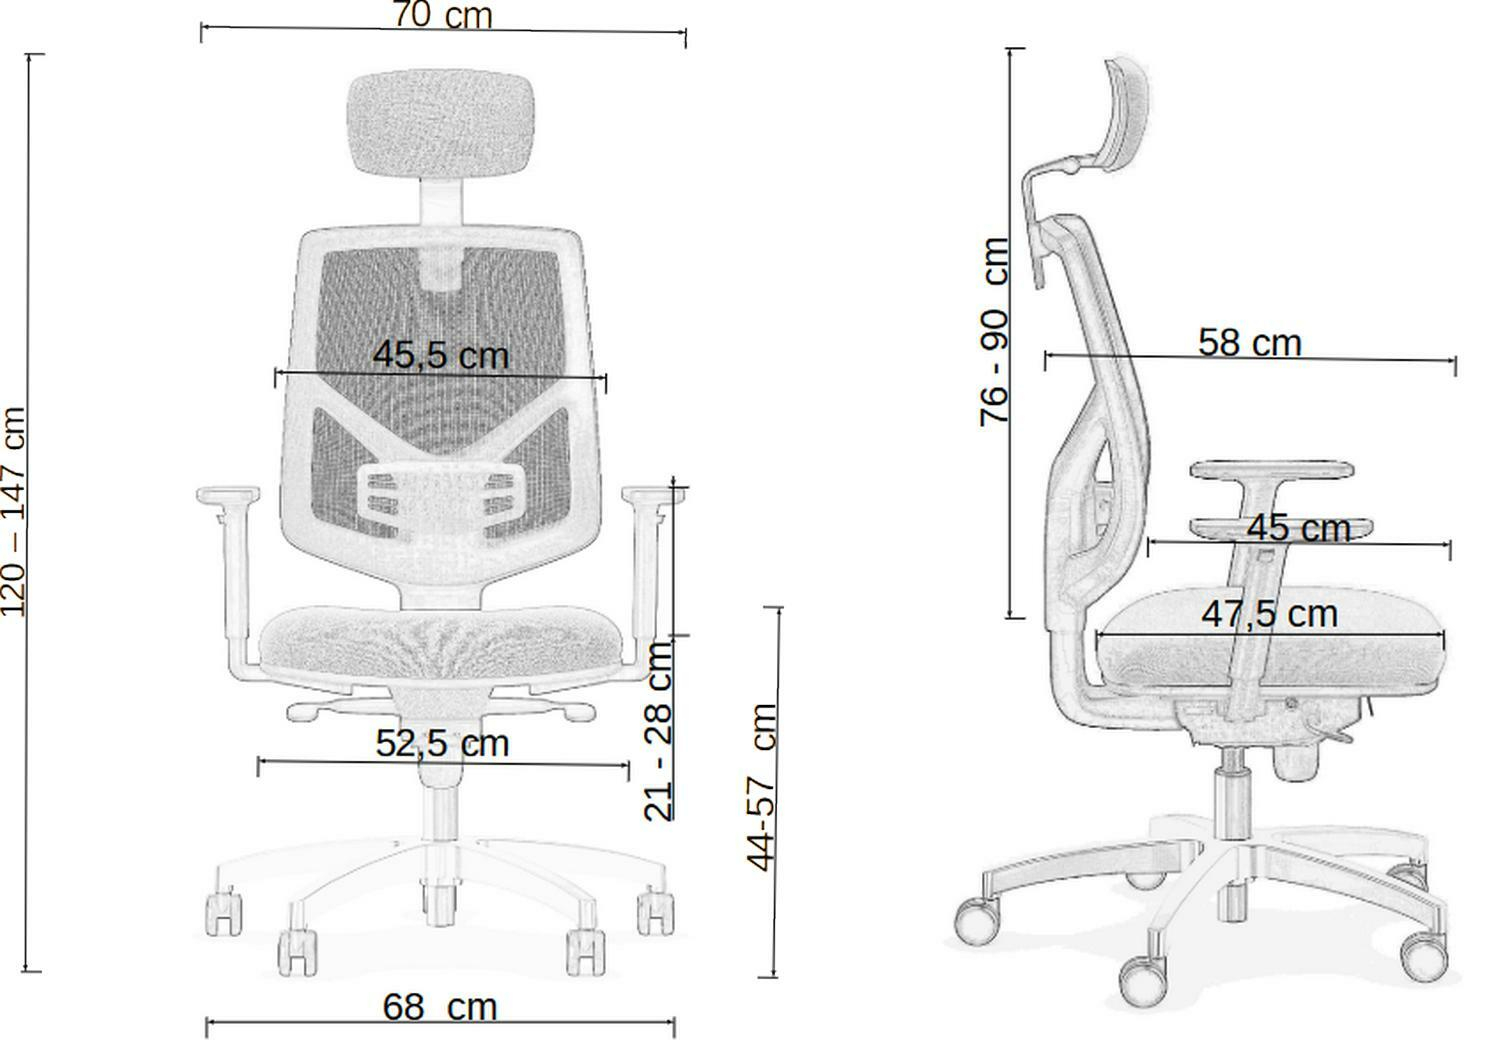 Fotel biurowy BREMEN - ergonomiczny, atestowany